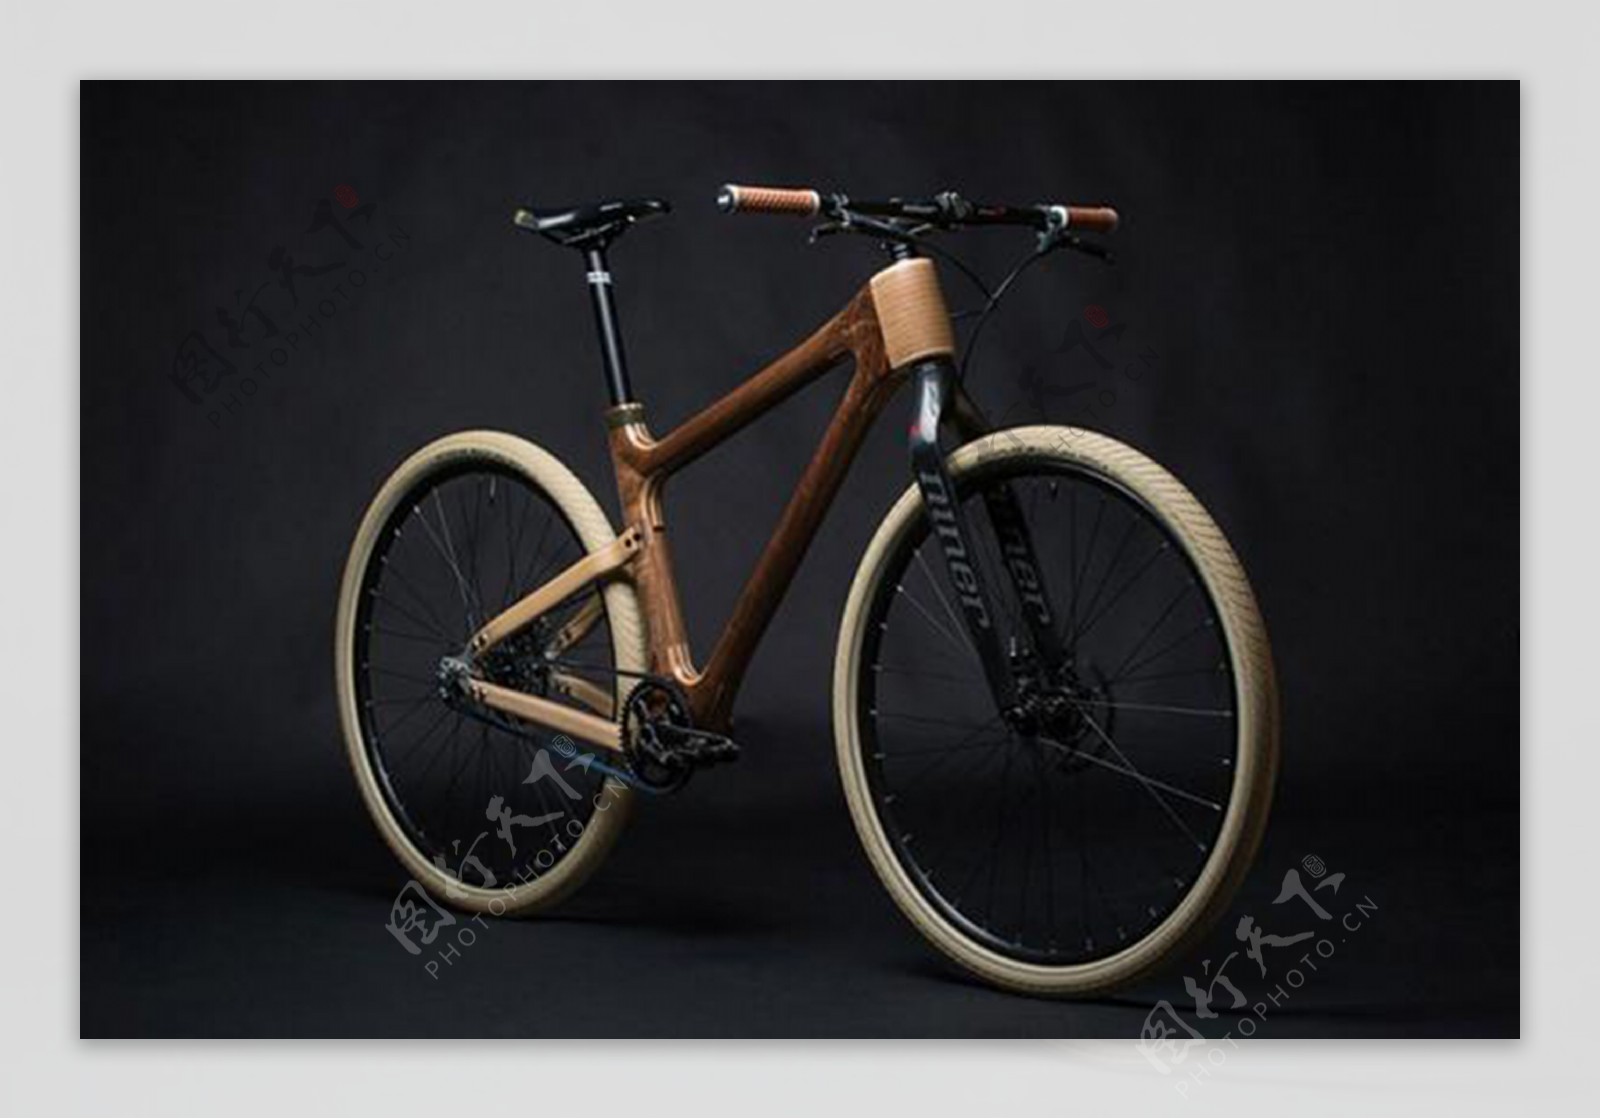 简单至极的木质单车